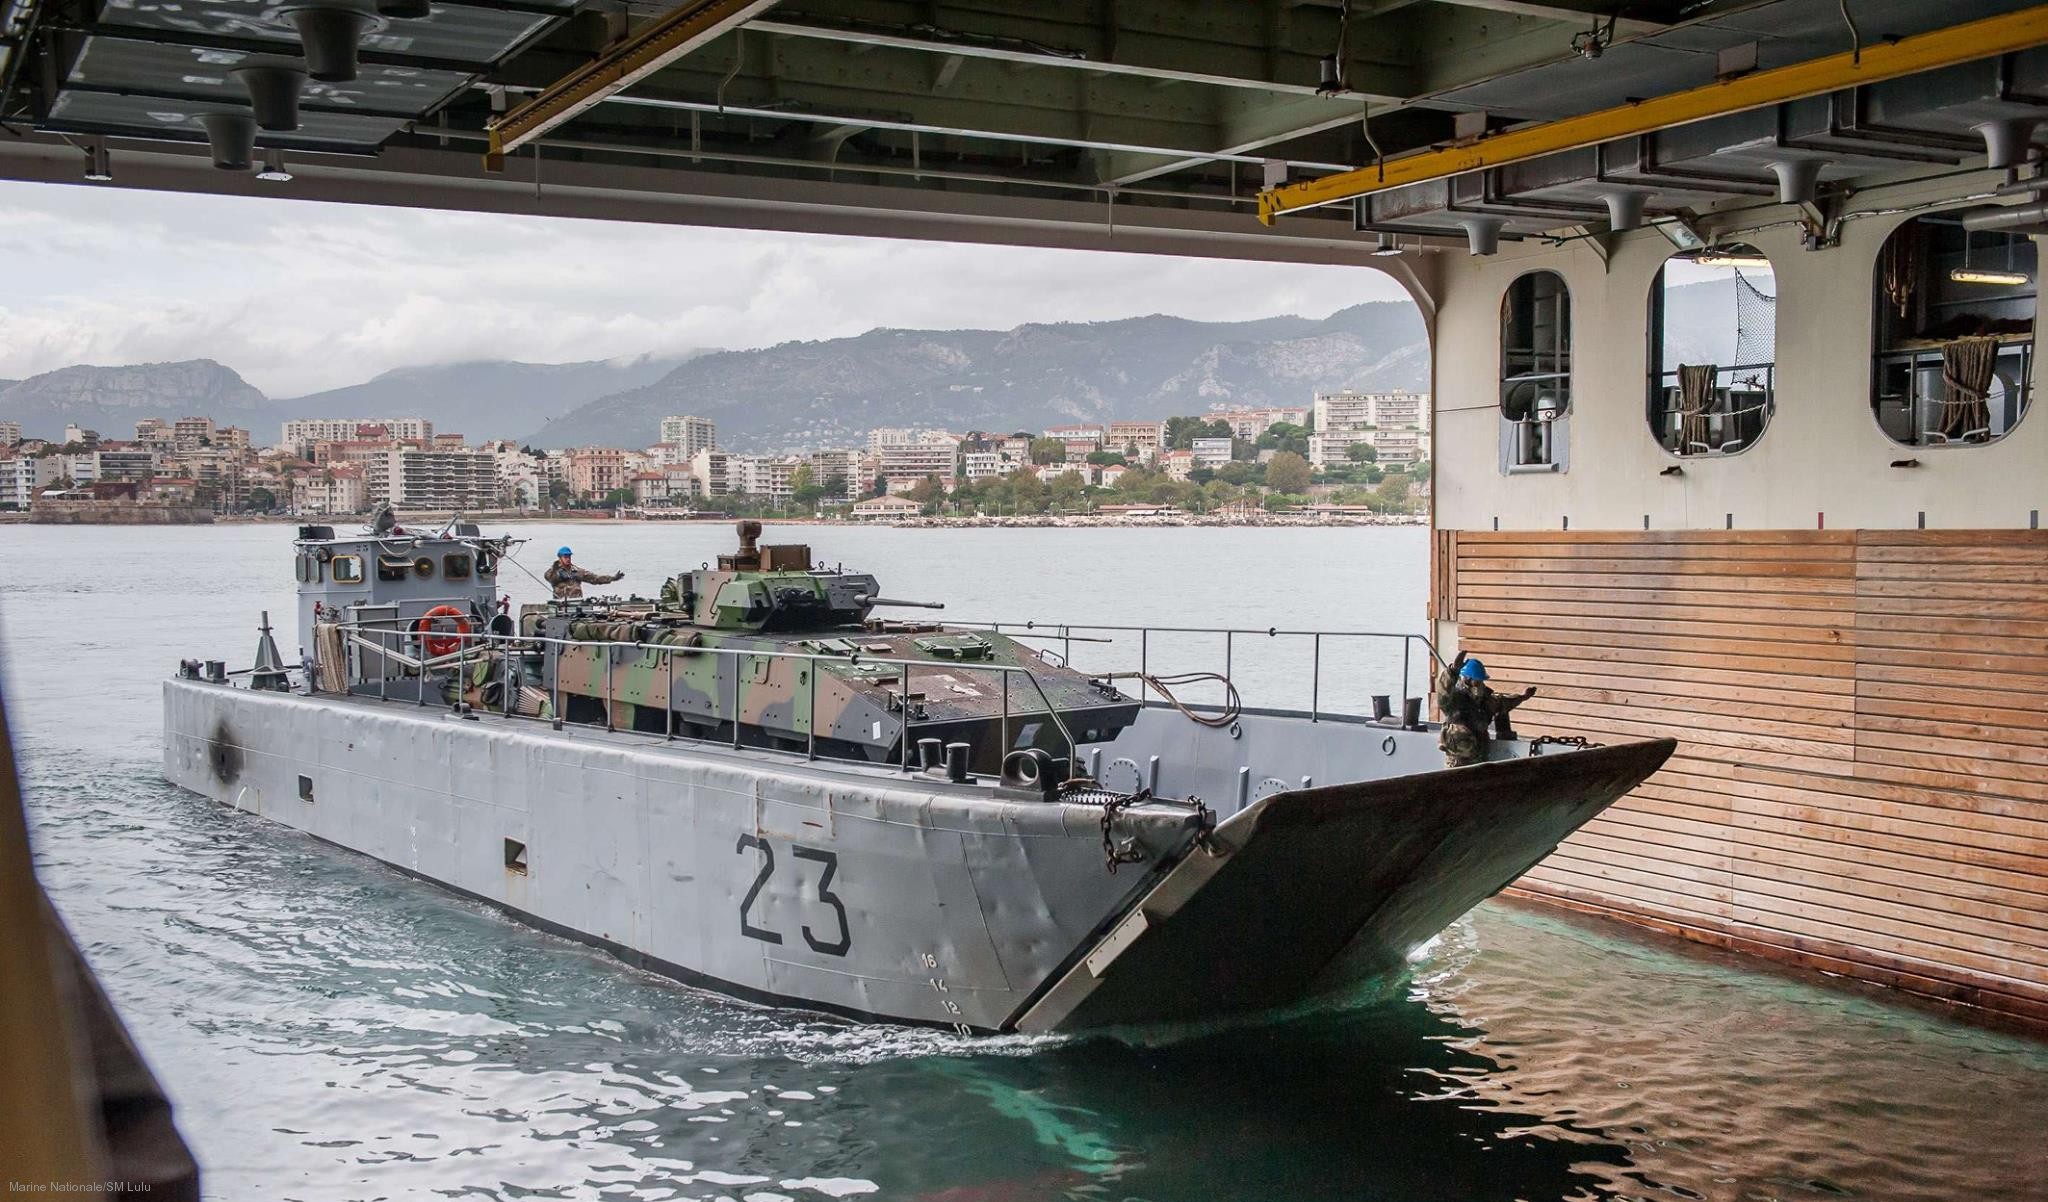 l-9014 fs tonnere mistral class amphibious assault command ship bpc french navy marine nationale 26 landing craft chaland de transport de matereiel ctm